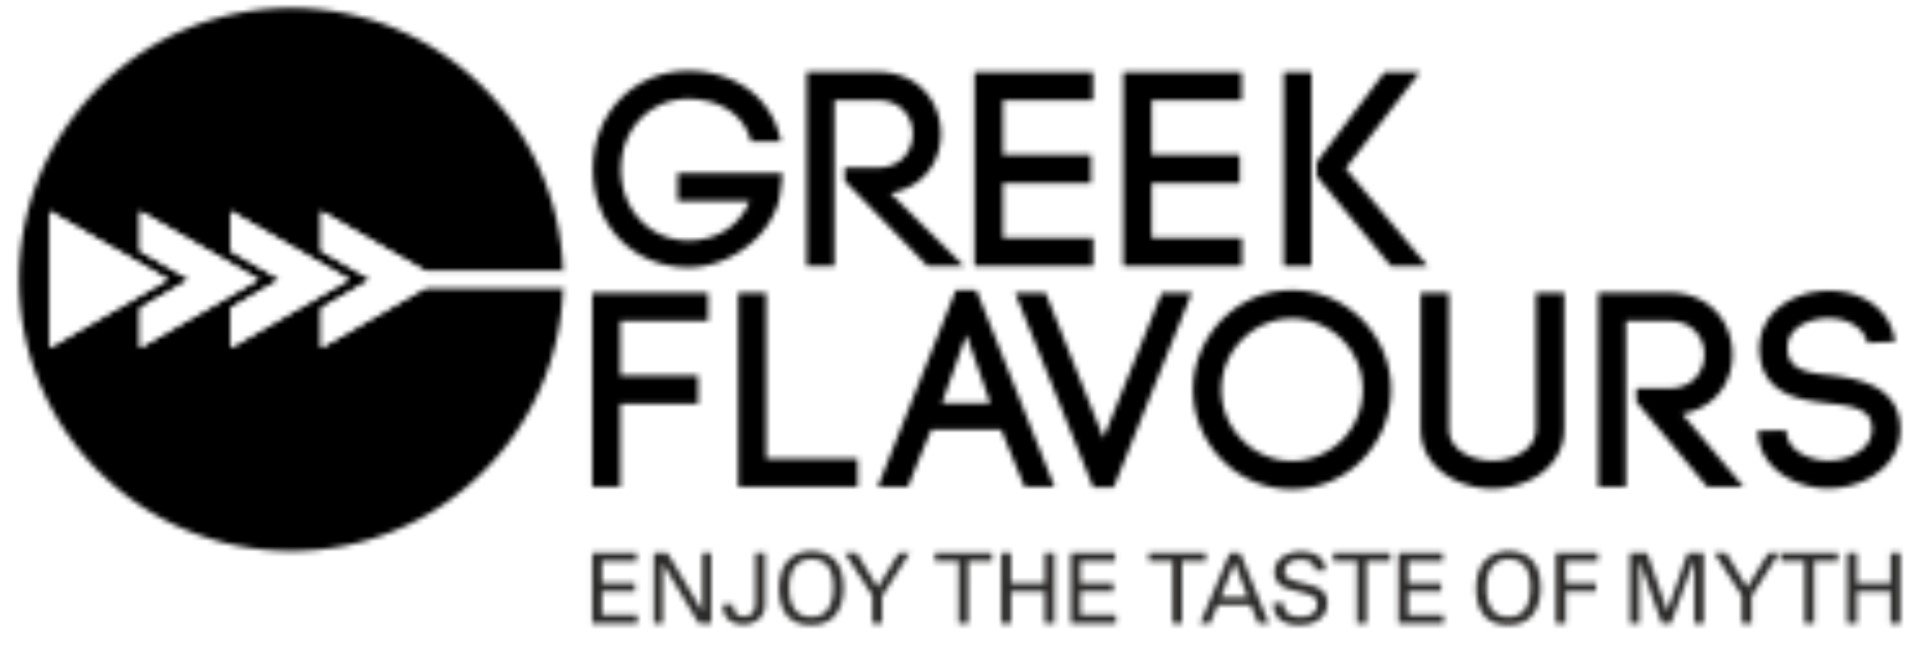 Greek Flavours EL logo